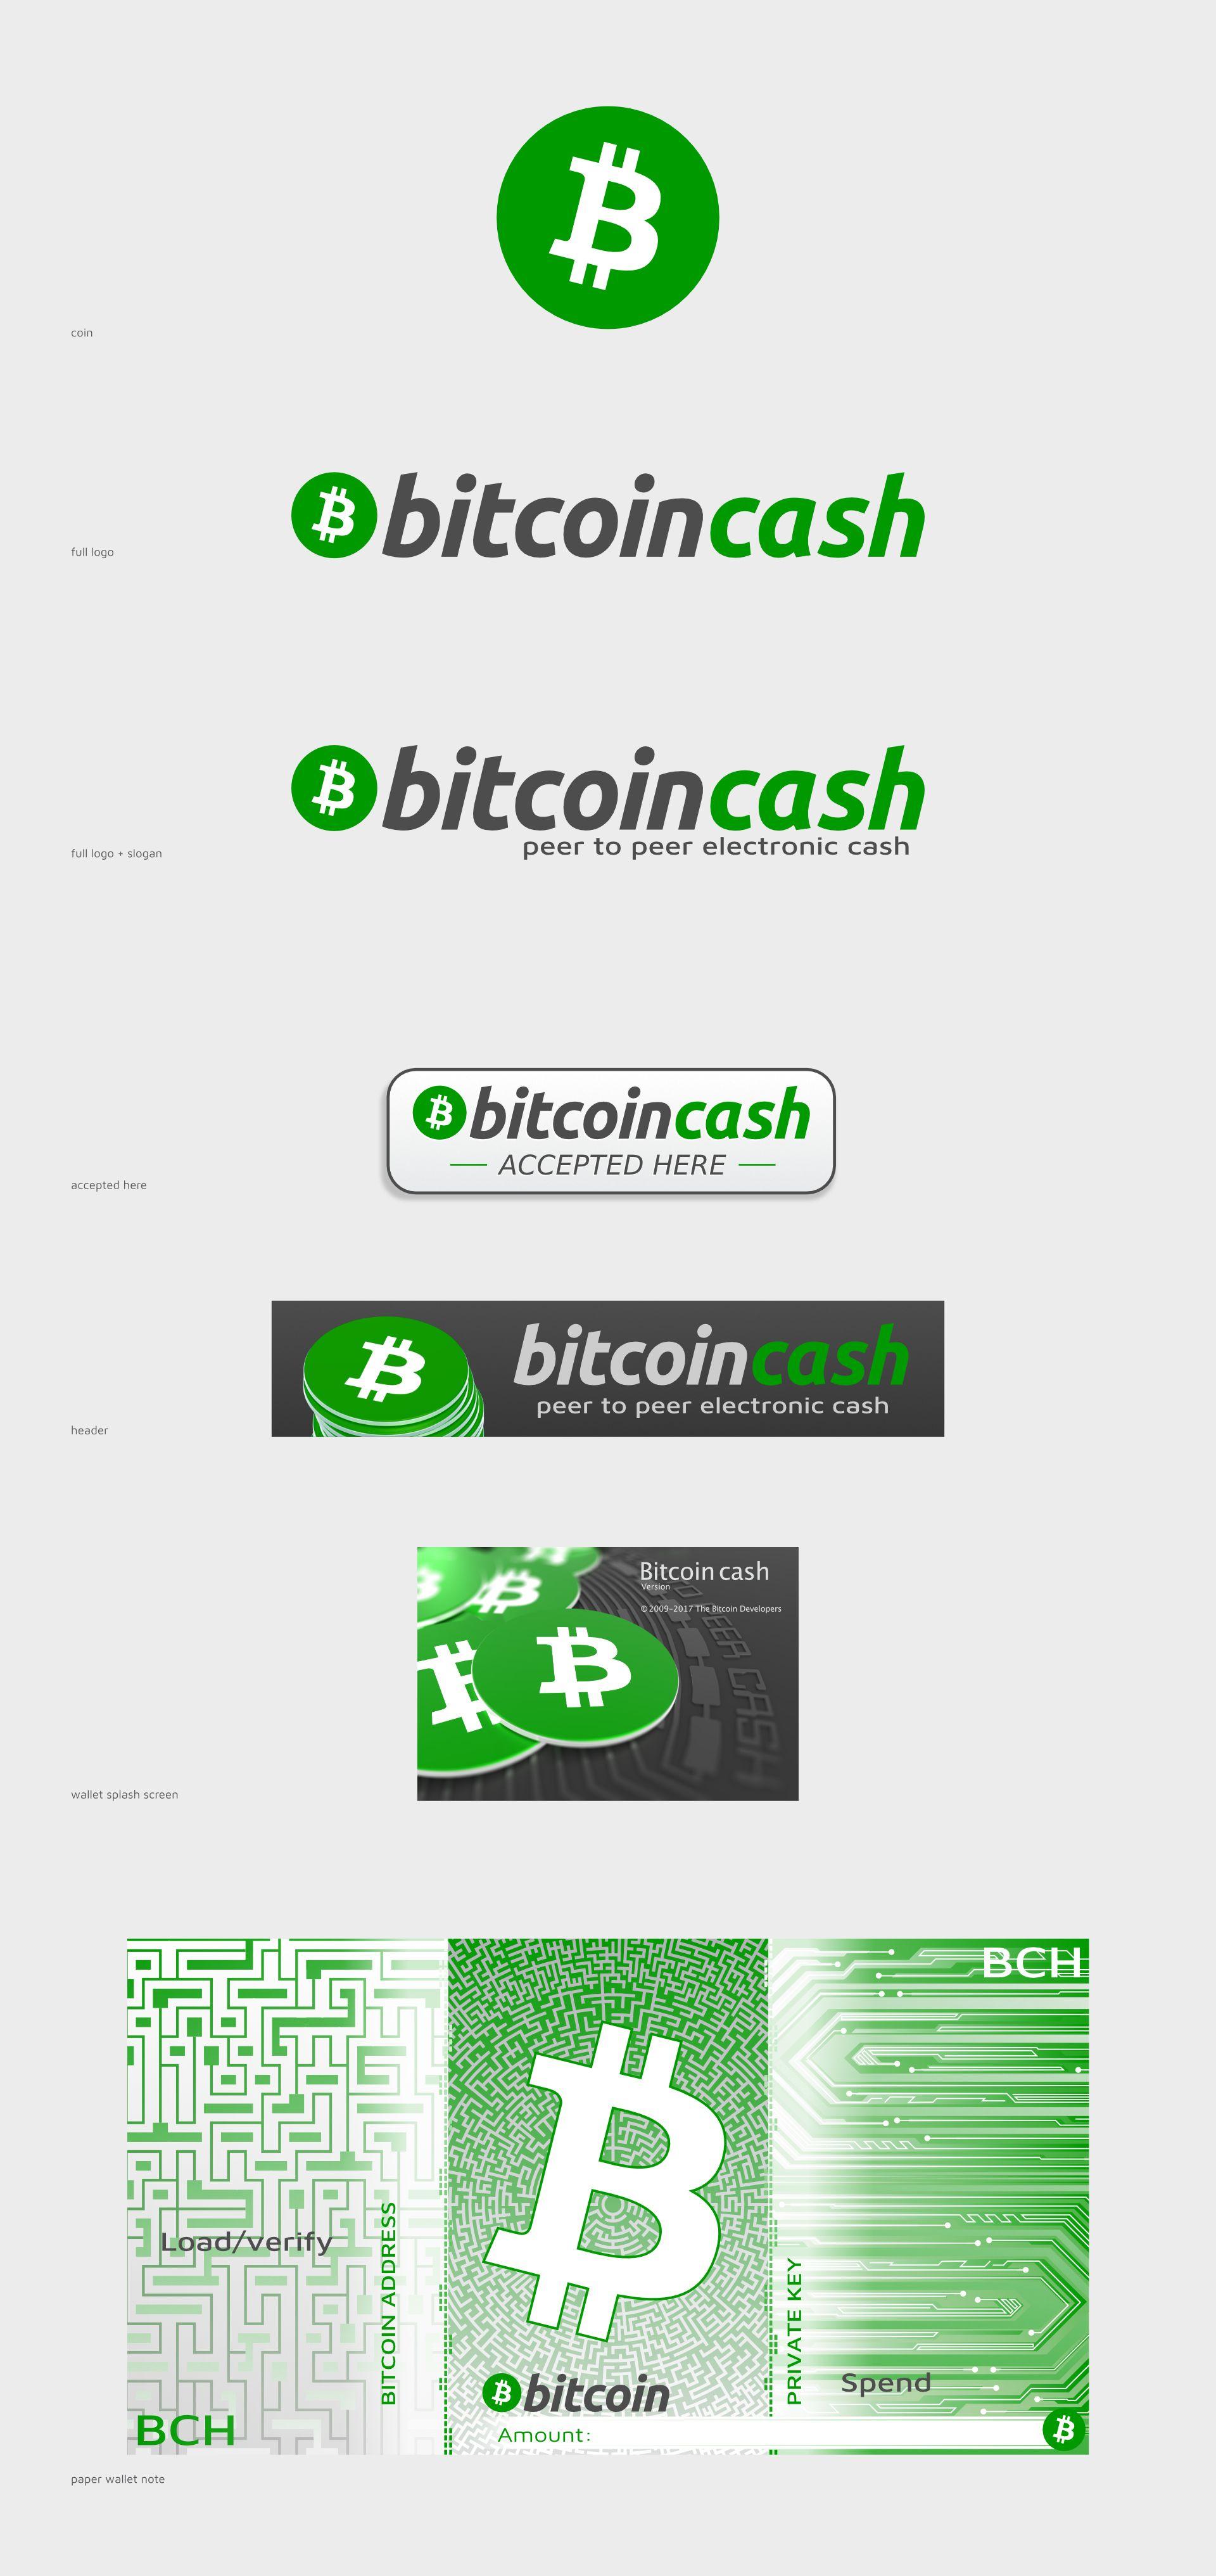 Cash -Only Logo - bitcoin cash logo & branding - The Bitcoin Forum